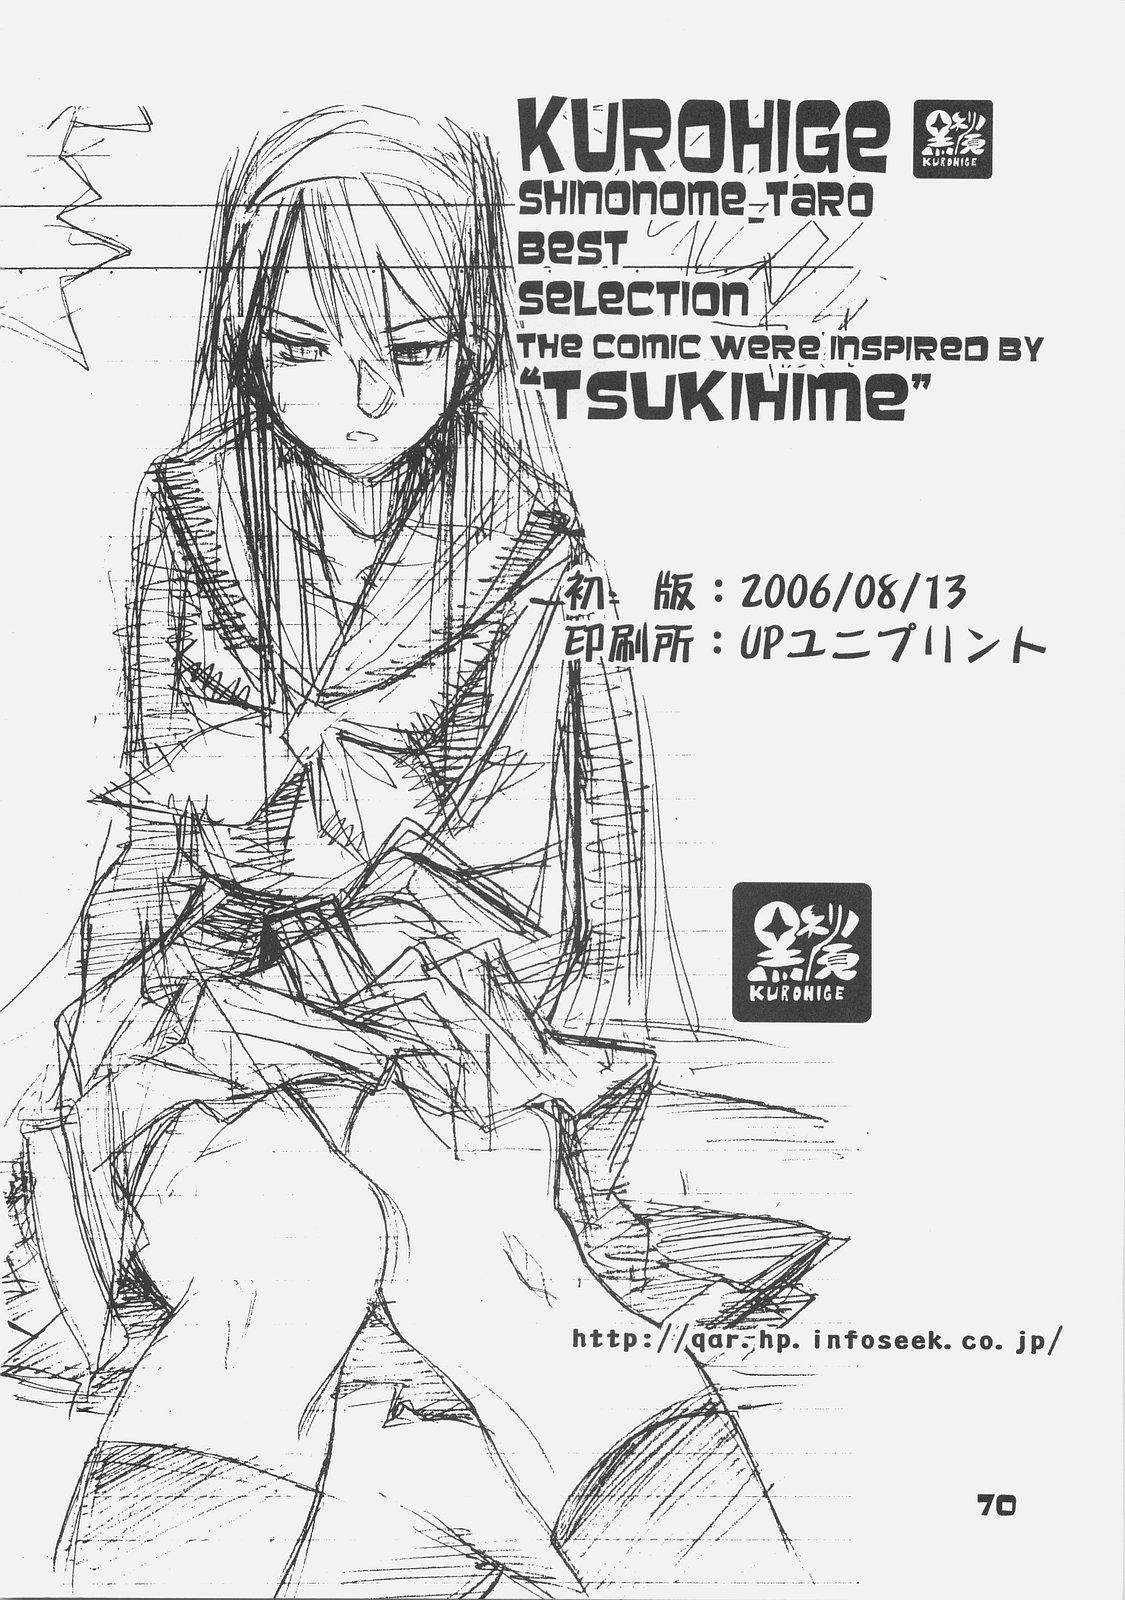 KUROHIGE SHINONOME_TaRO BEST SELECTION "TSUKIHIME" 66